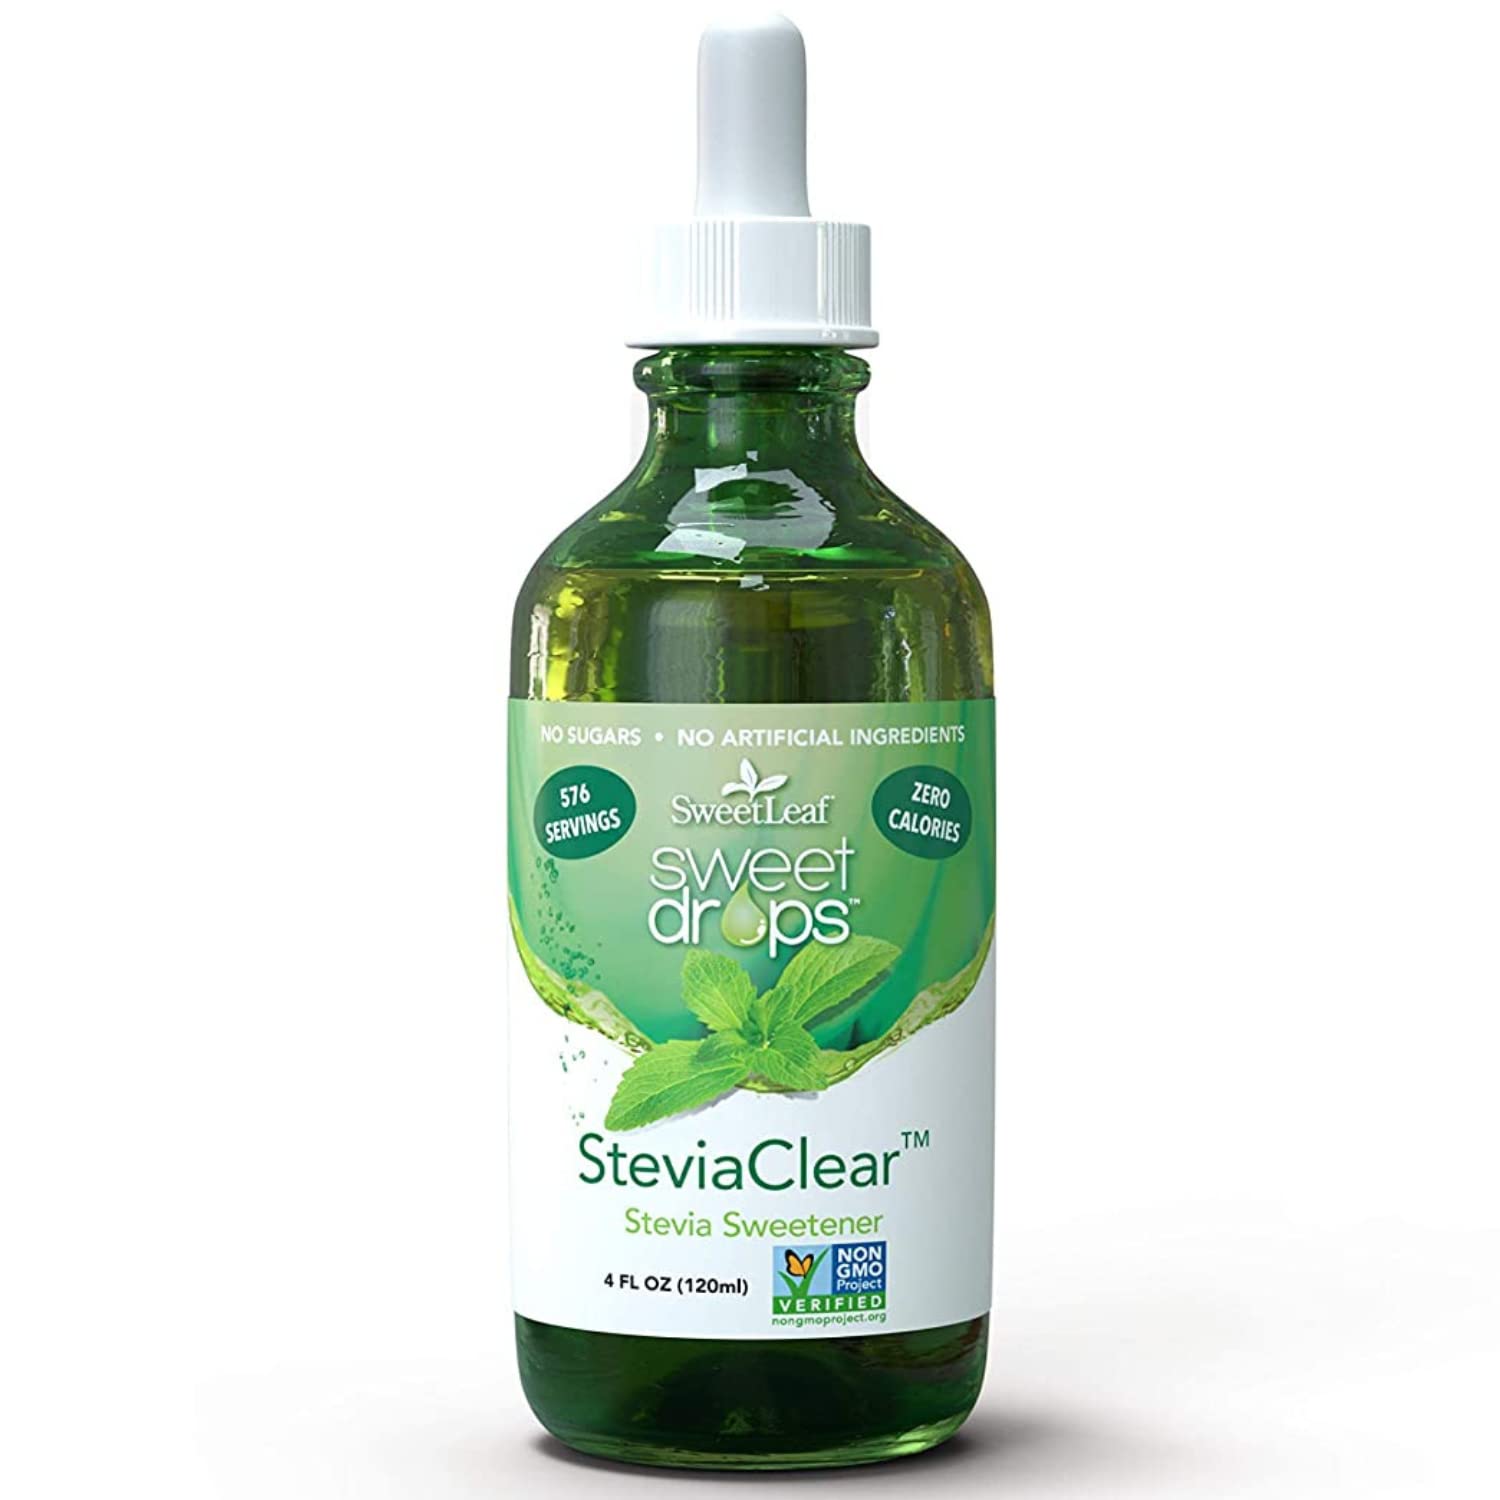 SweetLeaf Sweet Drops Liquid Stevia Sweetener, Stevia Clear, 4 oz